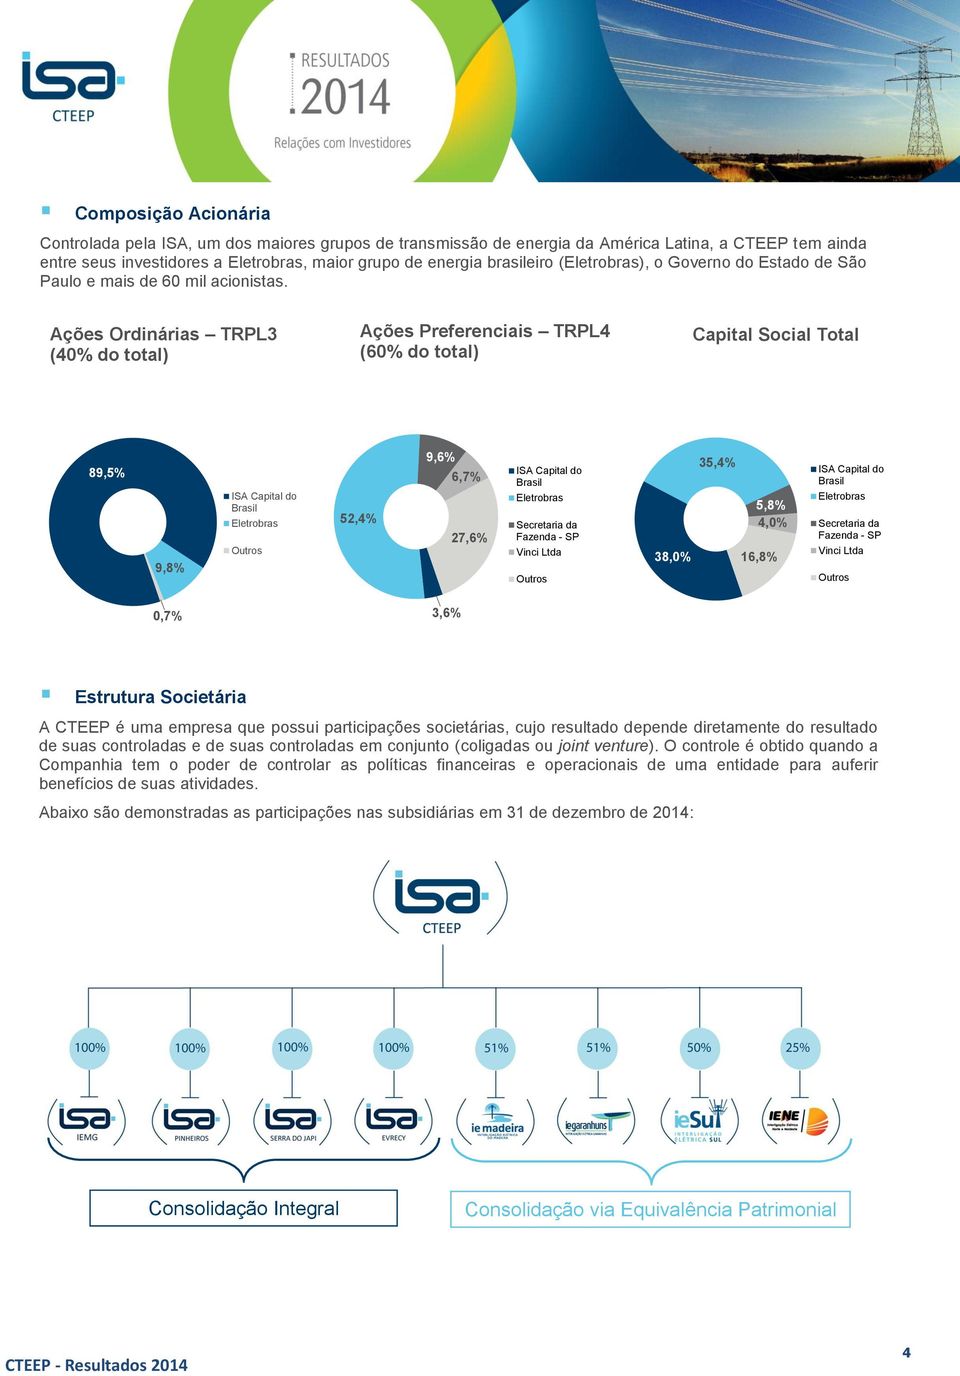 Ações Ordinárias TRPL3 (40% do total) Ações Preferenciais TRPL4 (60% do total) Capital Social Total 89,5% 9,8% ISA Capital do Brasil Eletrobras Outros 52,4% 9,6% 6,7% 27,6% ISA Capital do Brasil